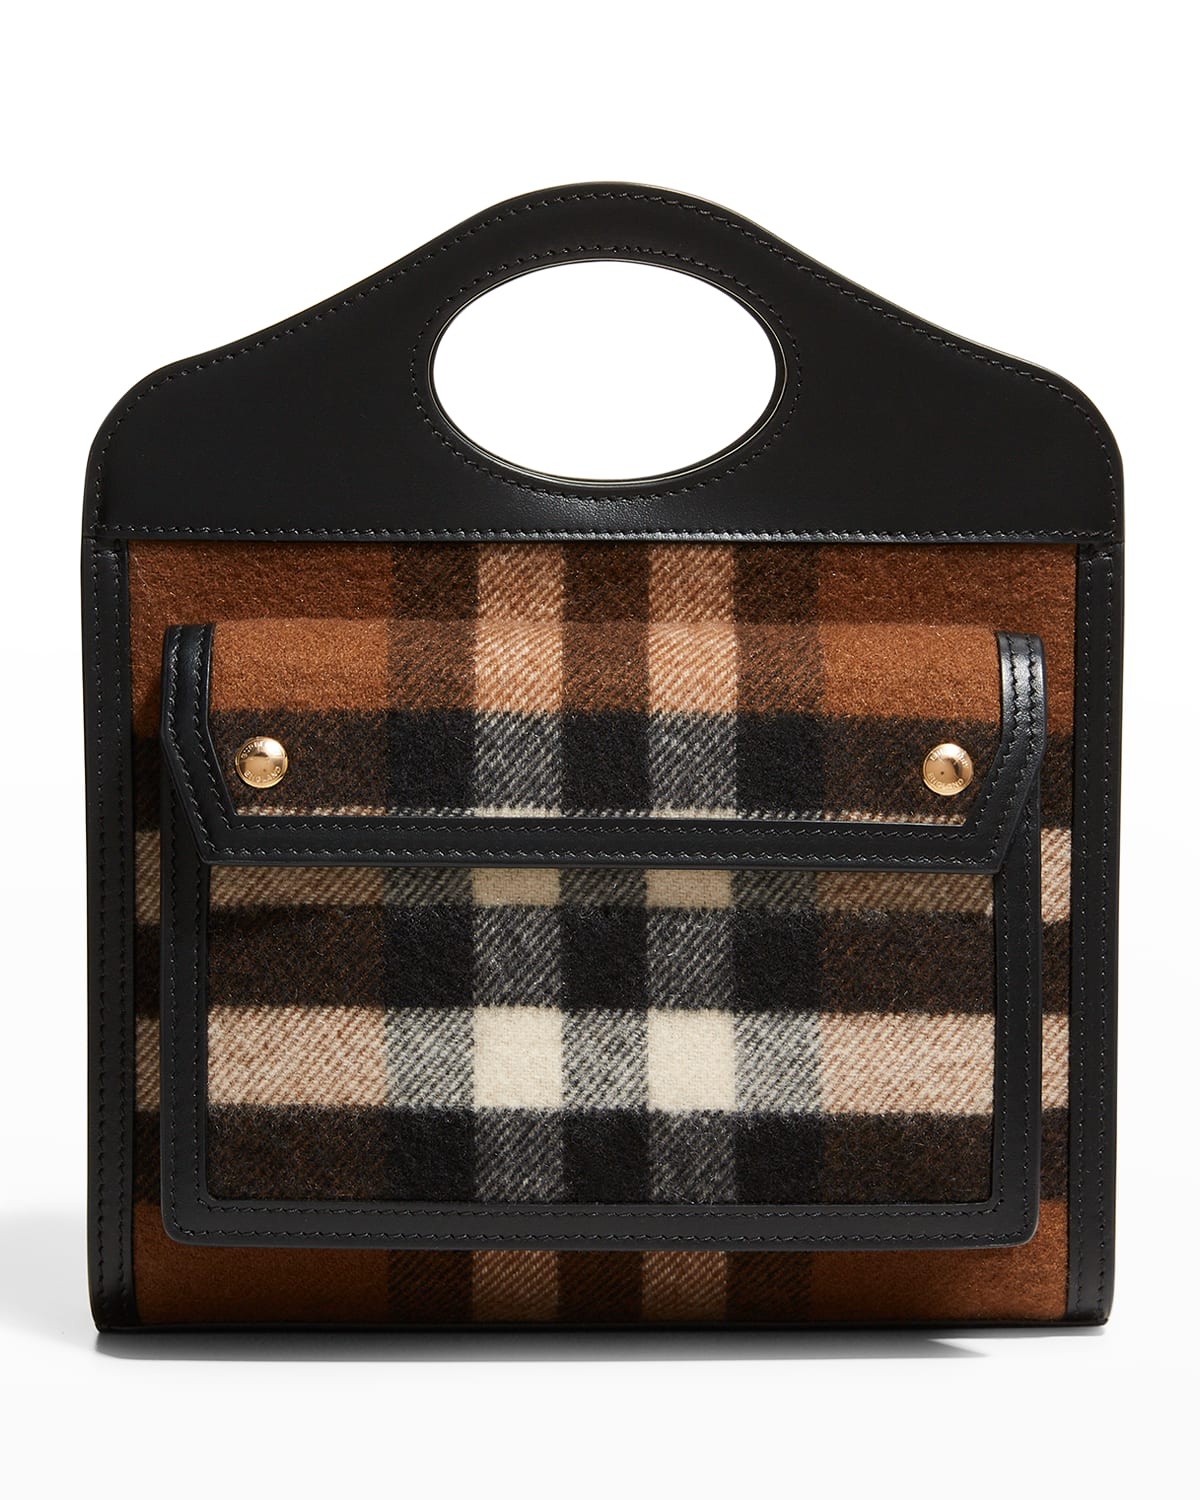 Burberry Check Cashmere Pocket Top-Handle Crossbody Bag